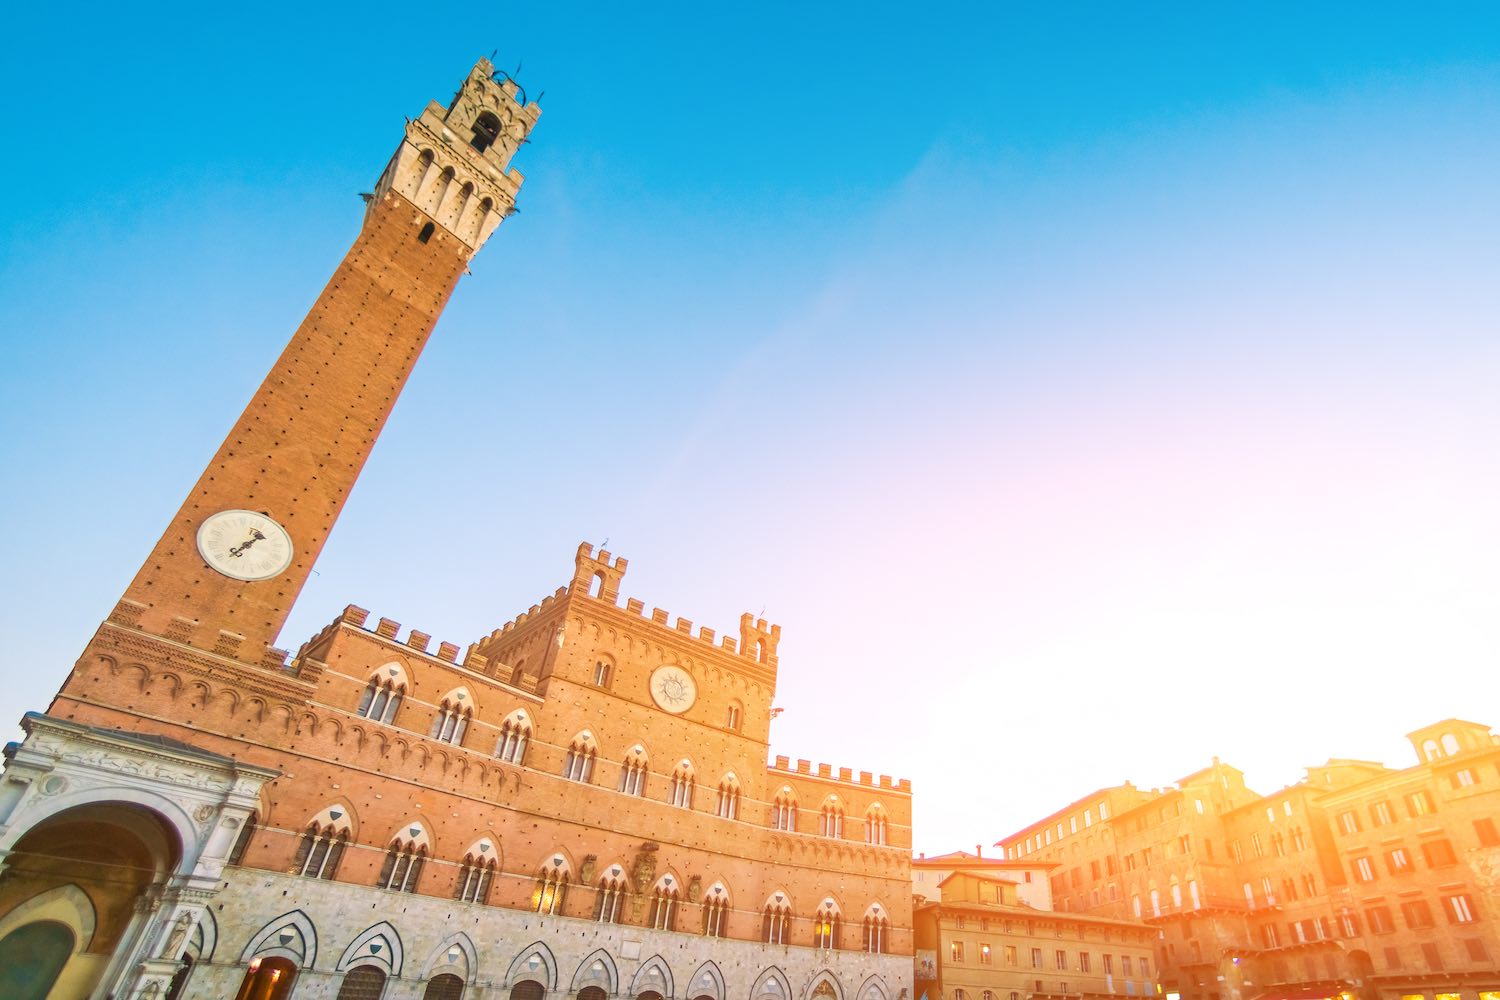 Il Palio di Siena è una delle tradizioni toscane più antiche della regione, ancora oggi vissuta dai senesi come un grande evento.